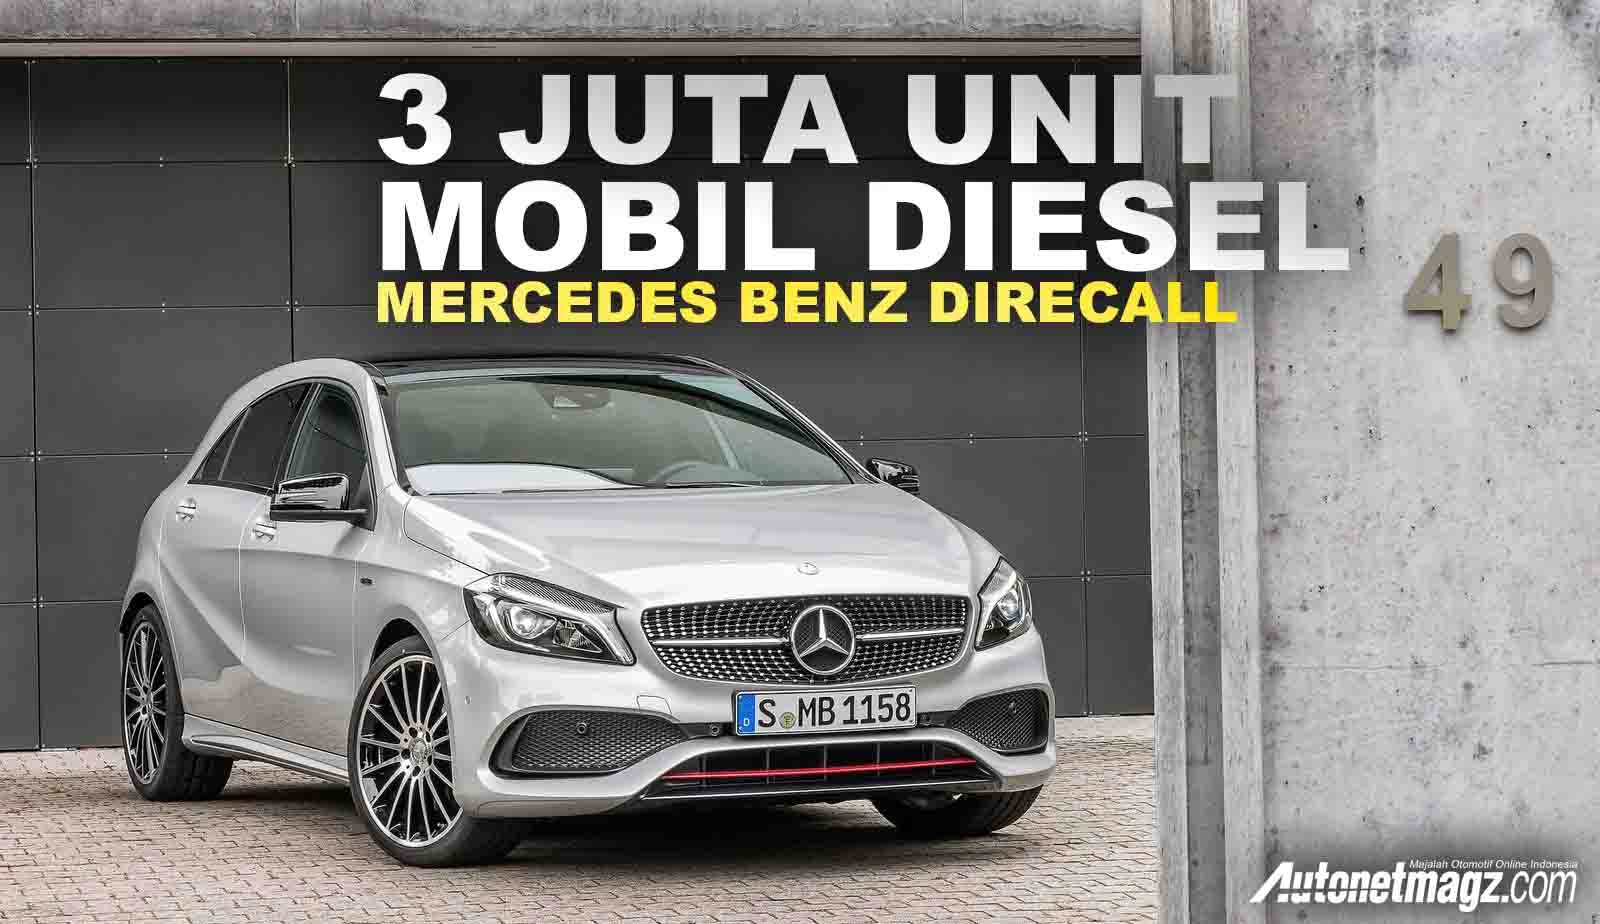 Berita, tiga juta mobil diesel mercedes direcall: Mercedes Benz Recall 3 Juta Unit Produk Diesel di Eropa